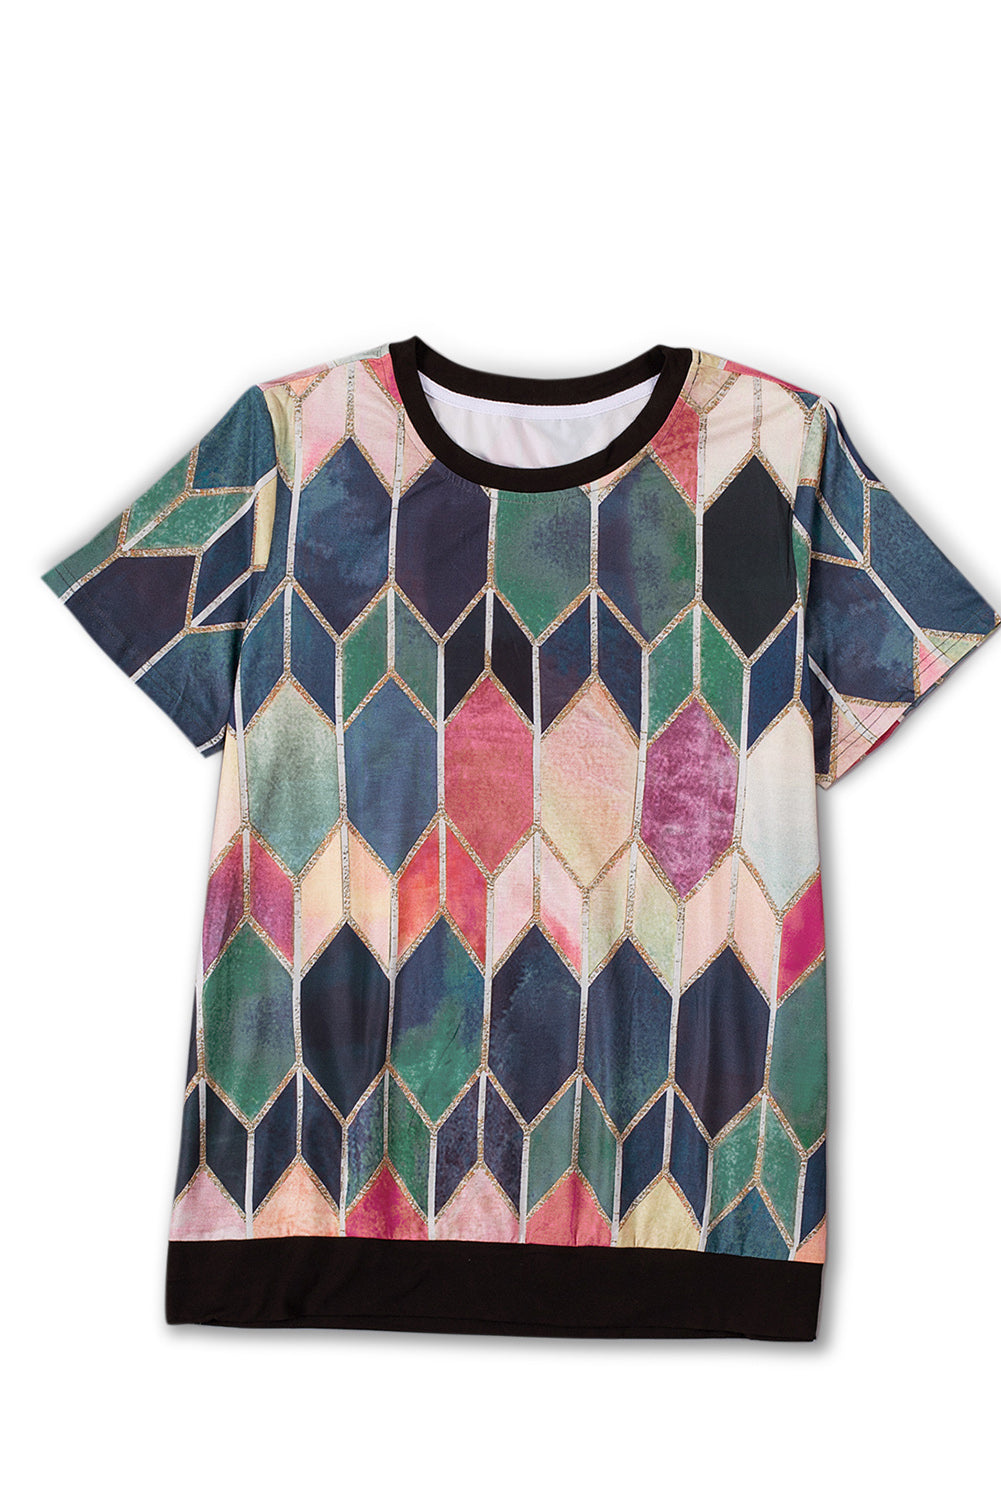 Ljubičasta majica veće veličine s okruglim izrezom i obojenom bojom u boji